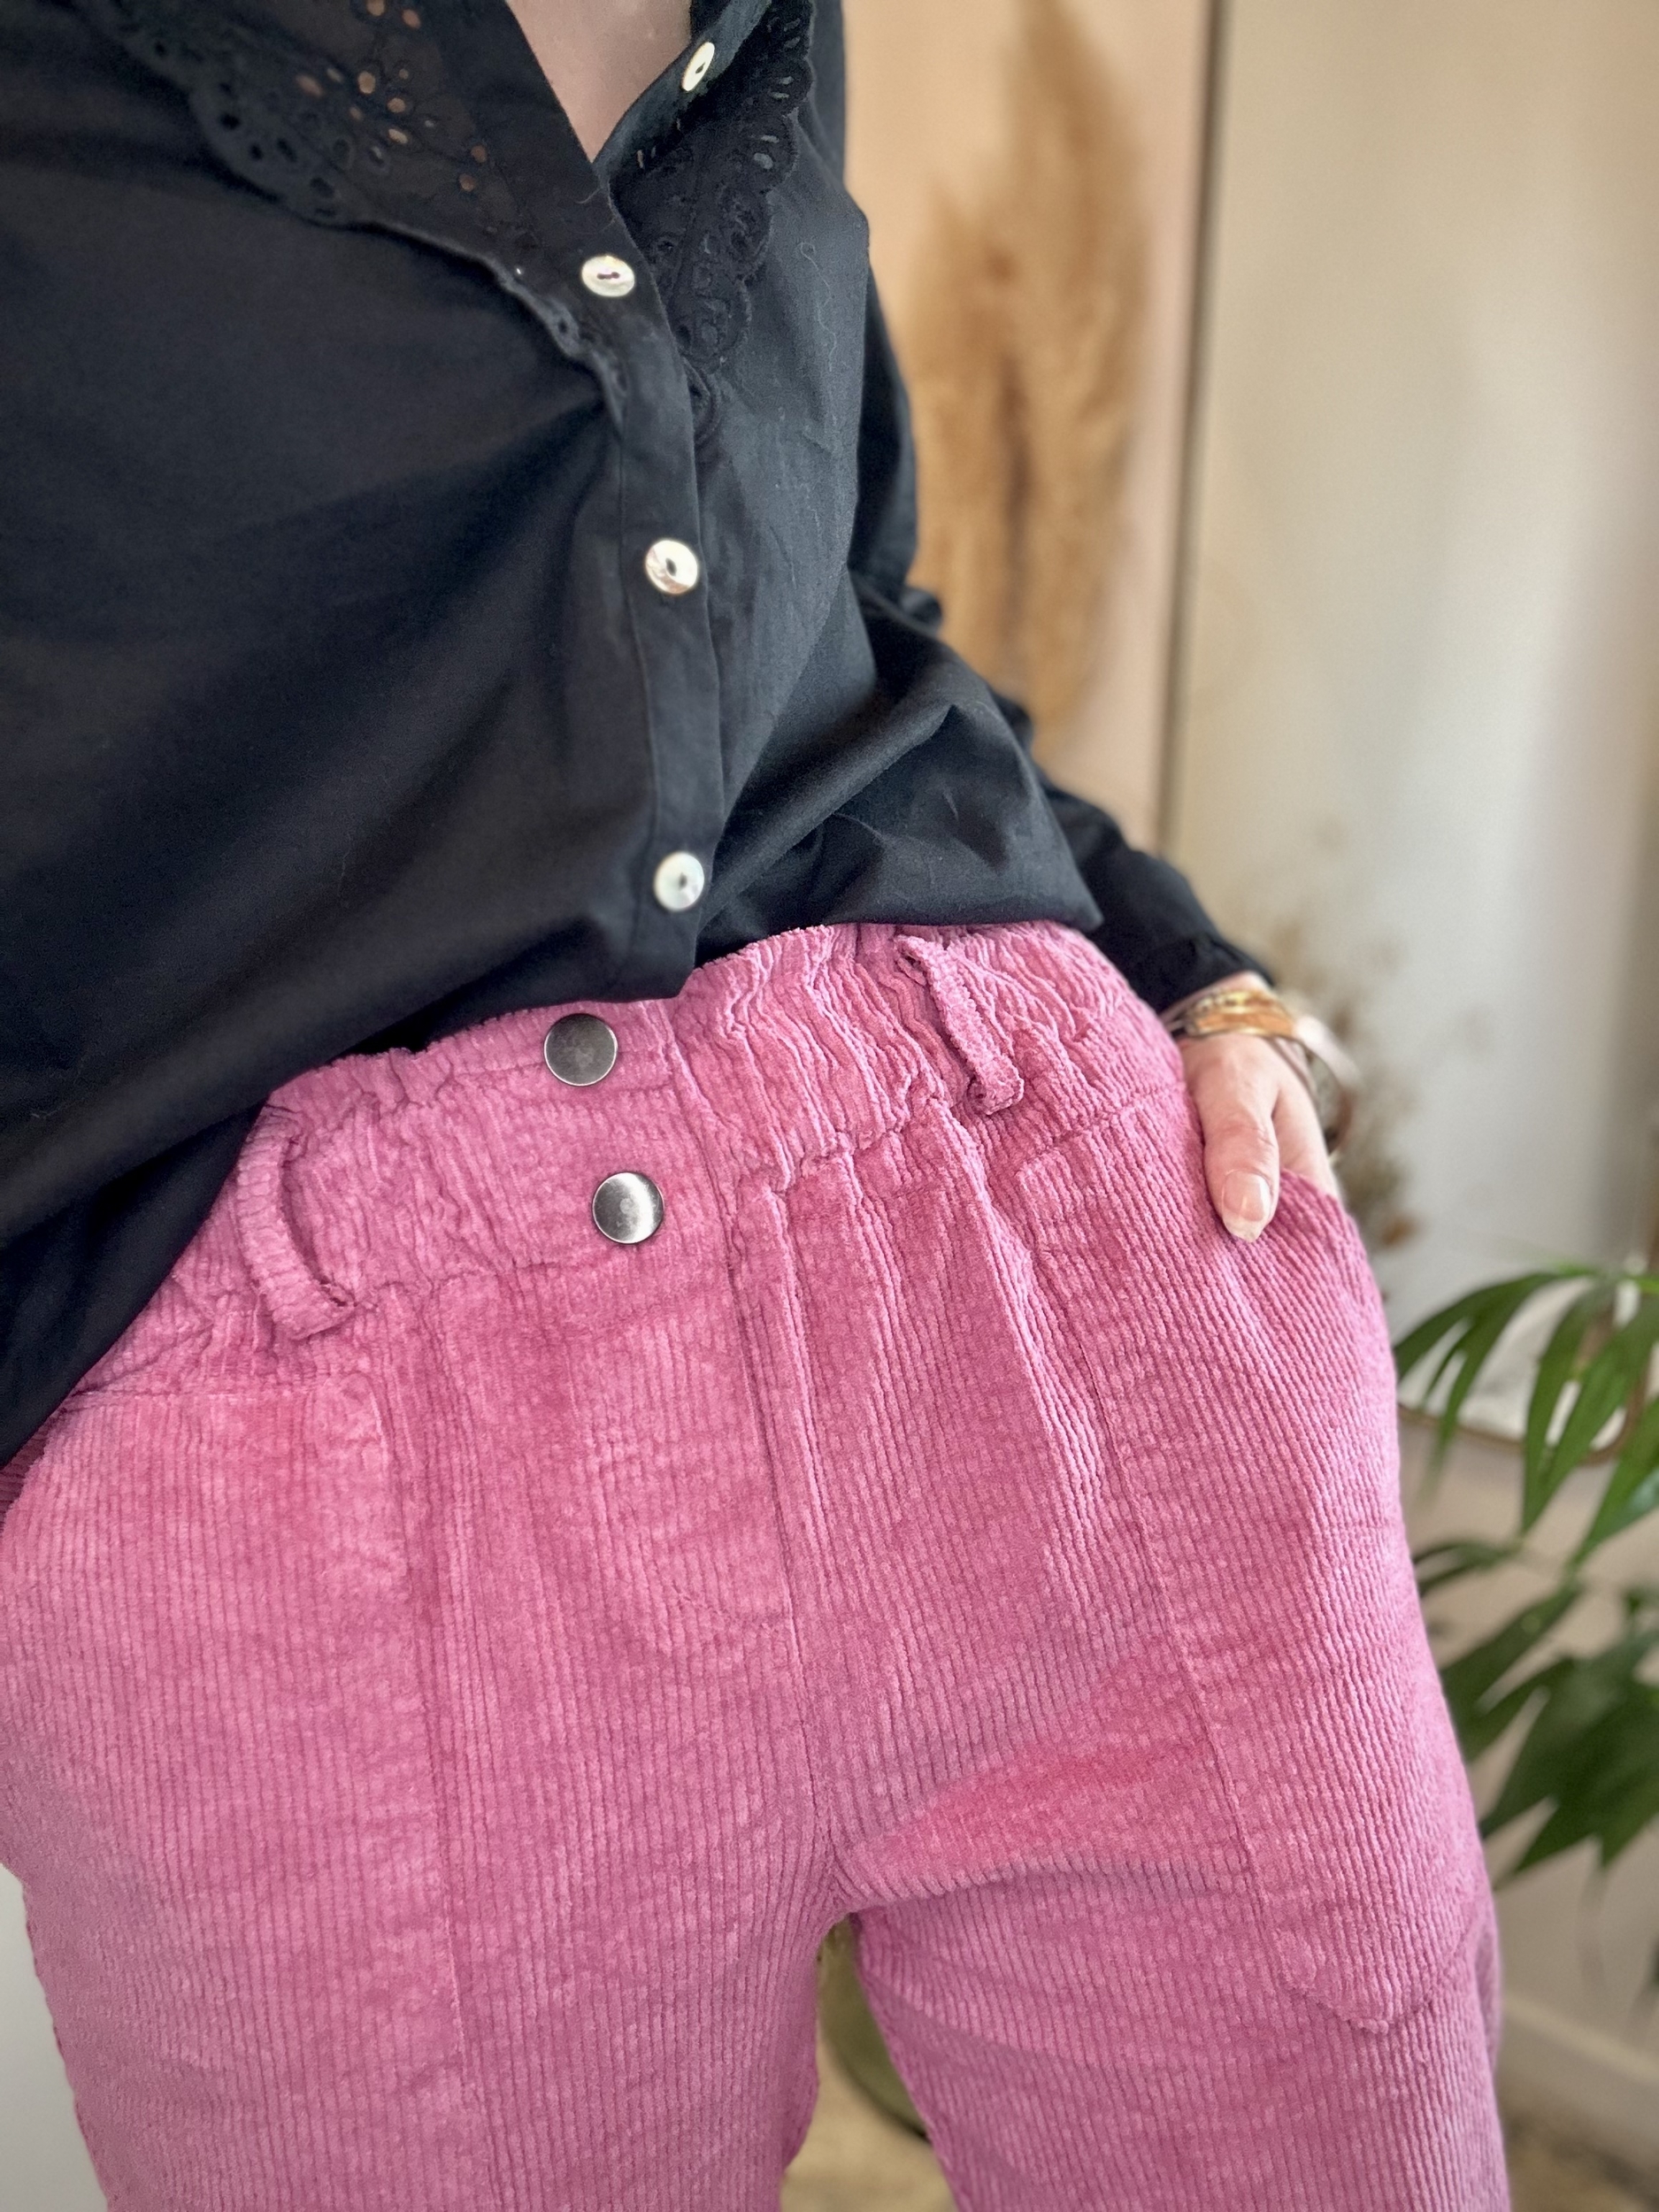 Pantalon velours rose